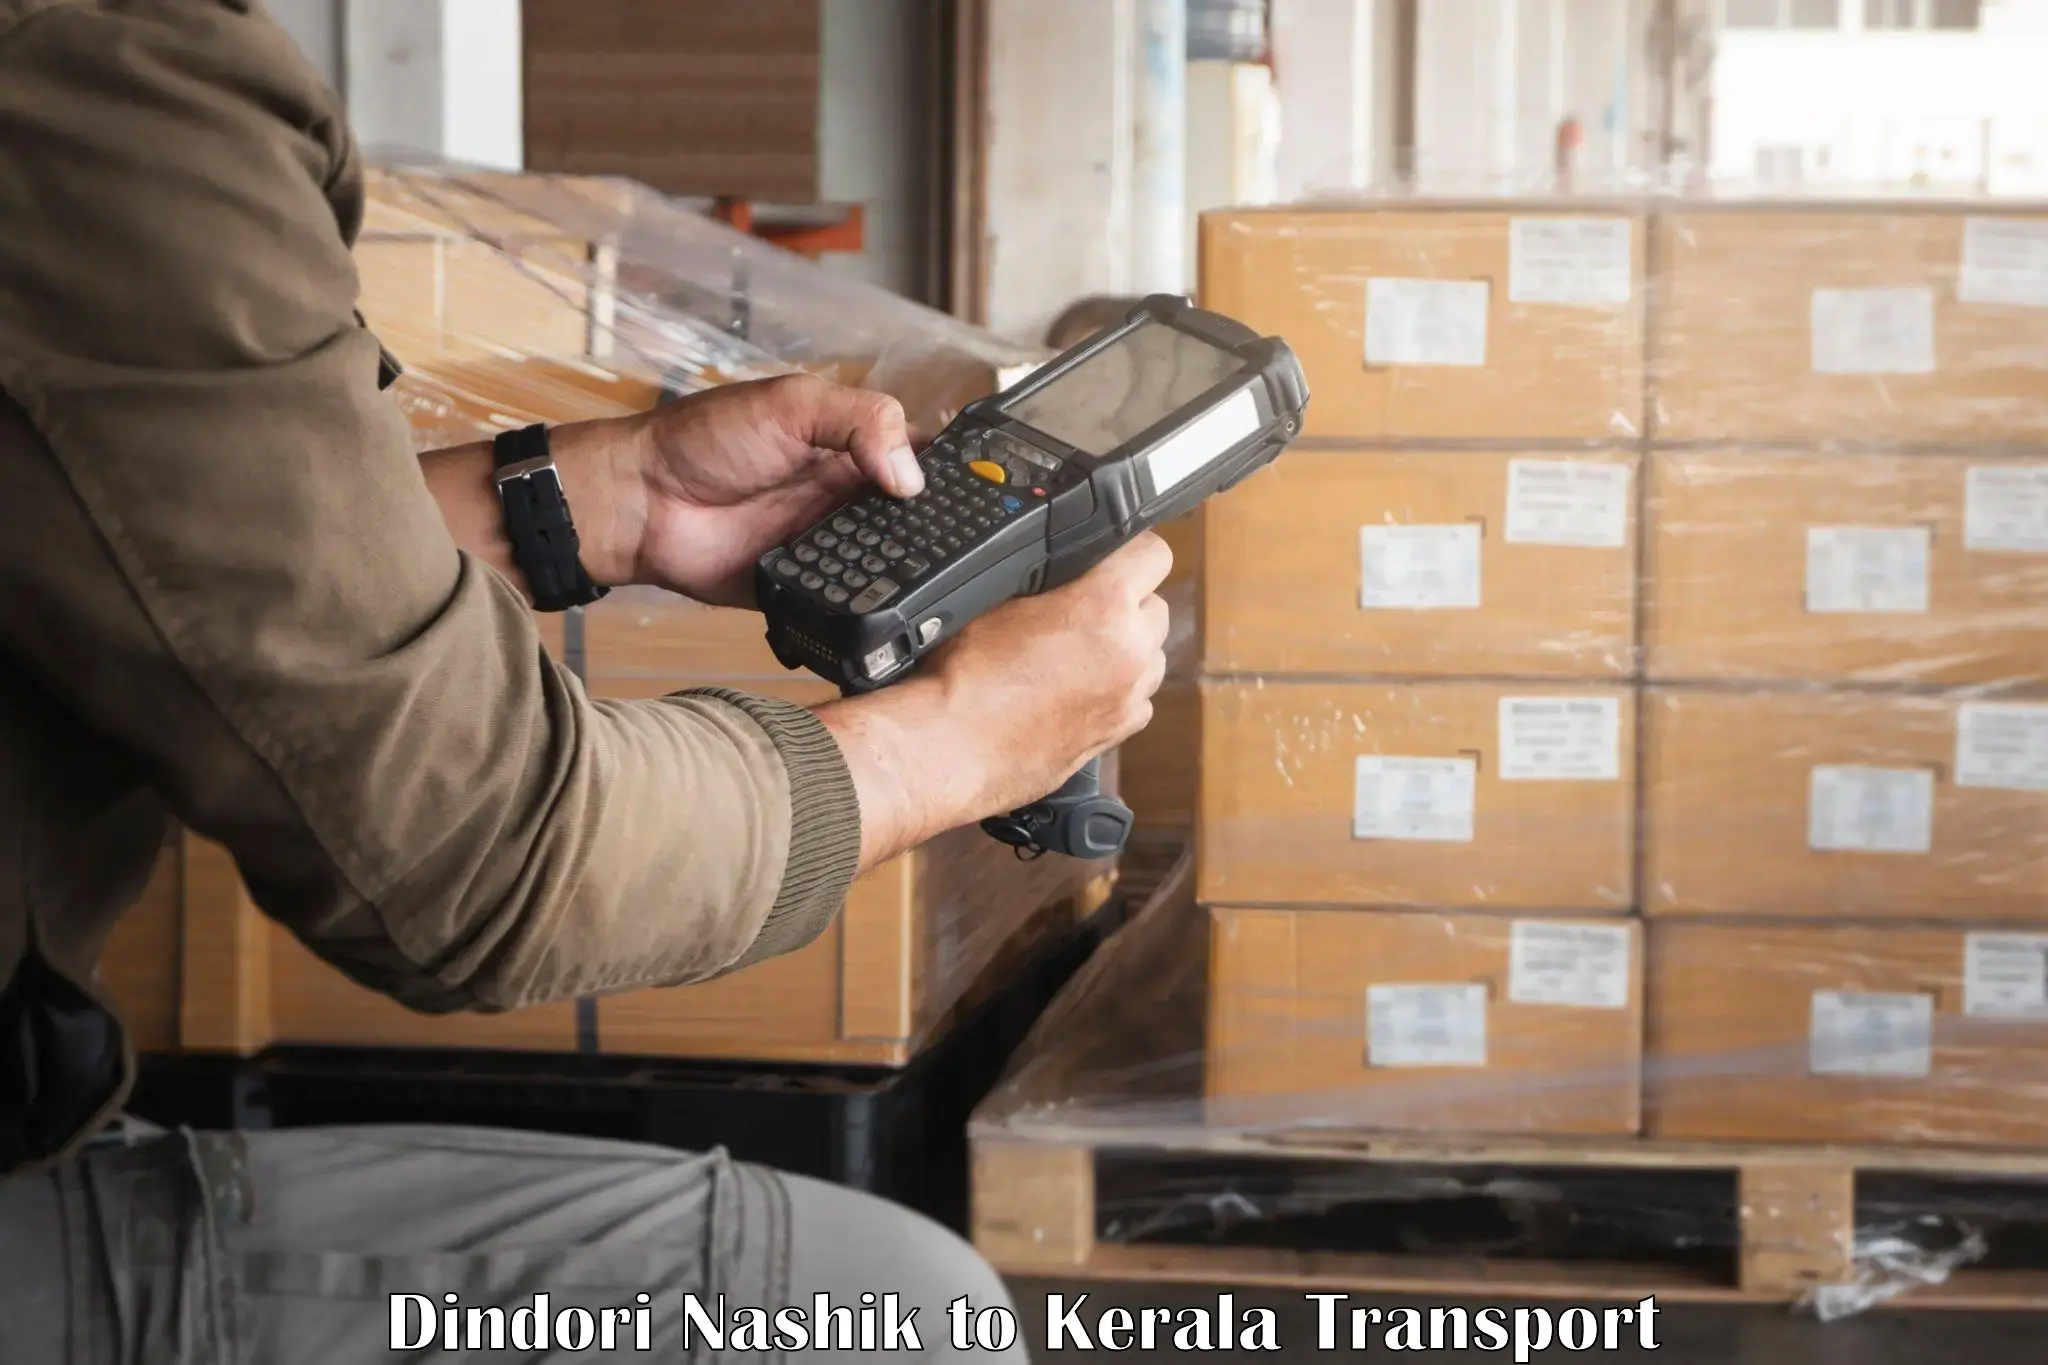 Nationwide transport services Dindori Nashik to Kerala